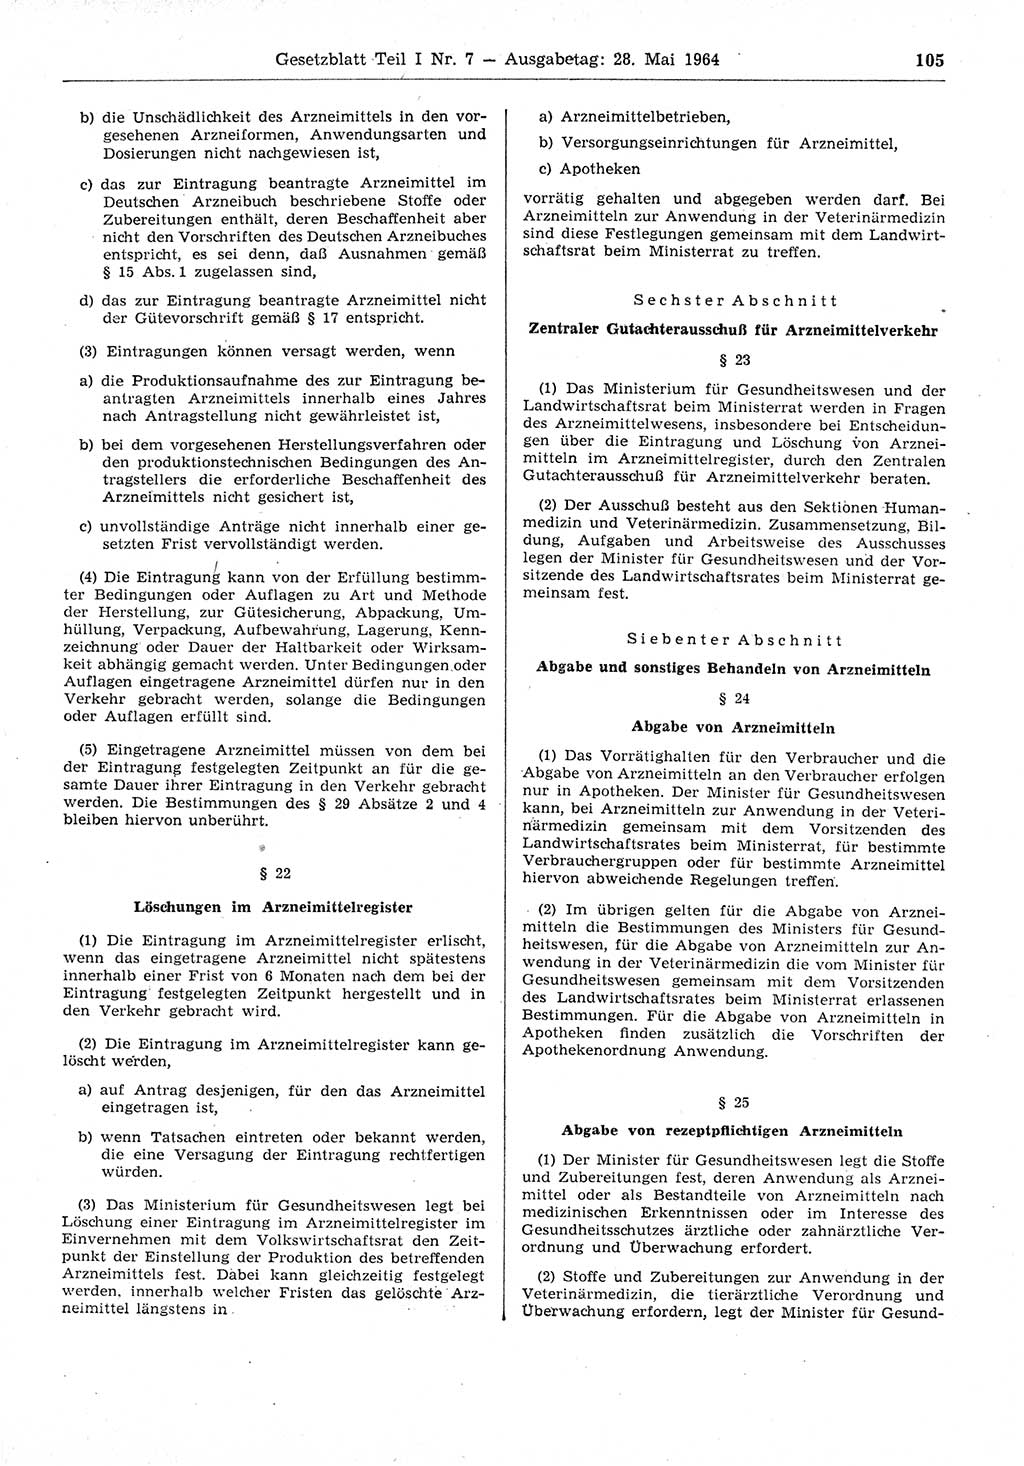 Gesetzblatt (GBl.) der Deutschen Demokratischen Republik (DDR) Teil Ⅰ 1964, Seite 105 (GBl. DDR Ⅰ 1964, S. 105)